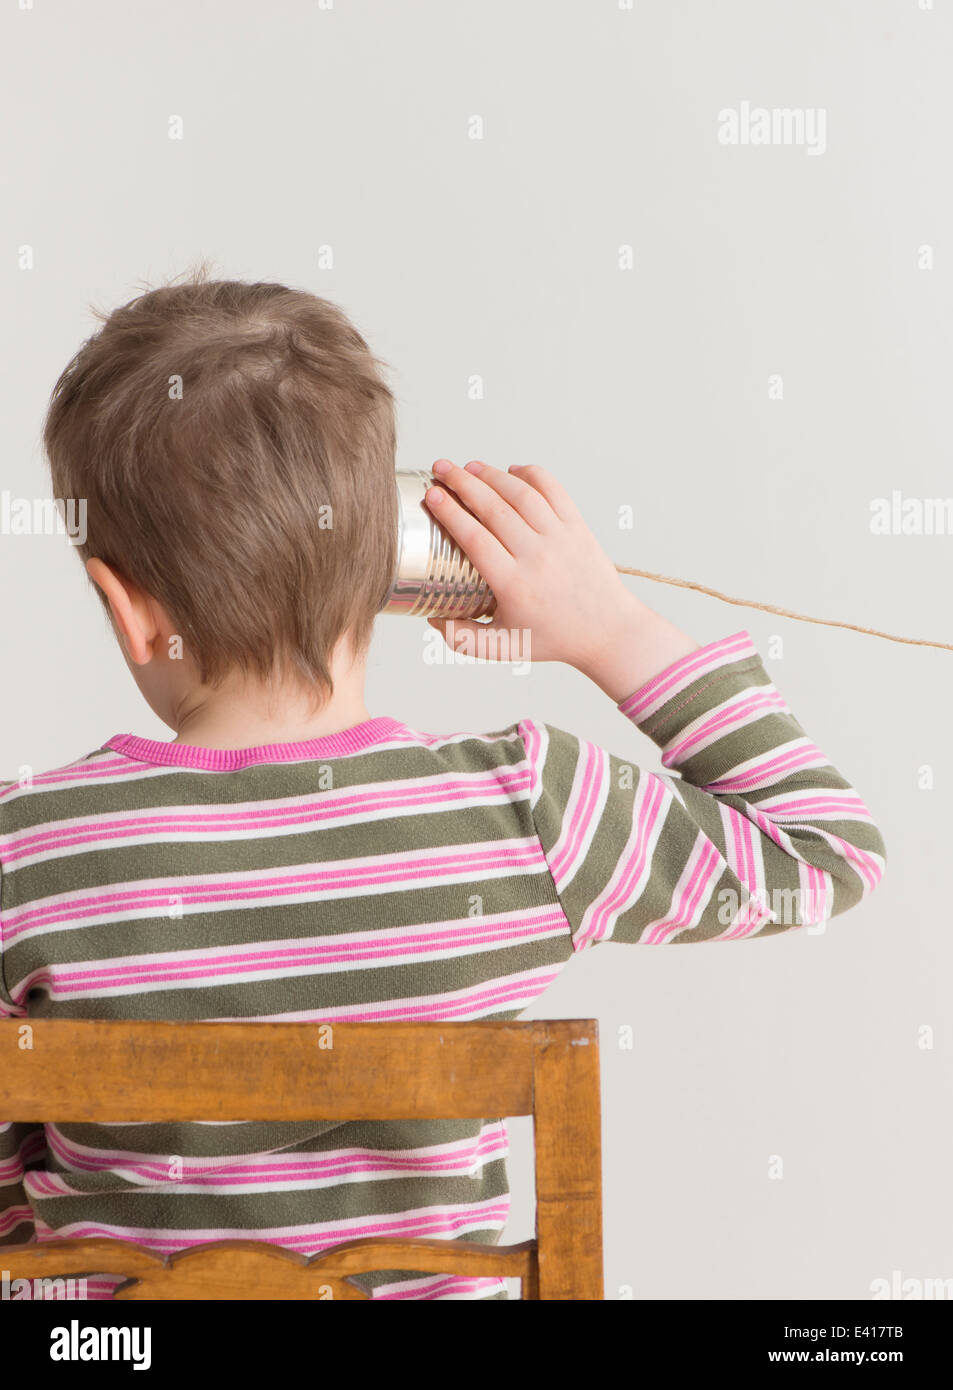 Peu d'écoute de l'enfant avec de l'étain peut téléphone. Image conceptuelle d'un jeu d'enfant et la communication. Banque D'Images